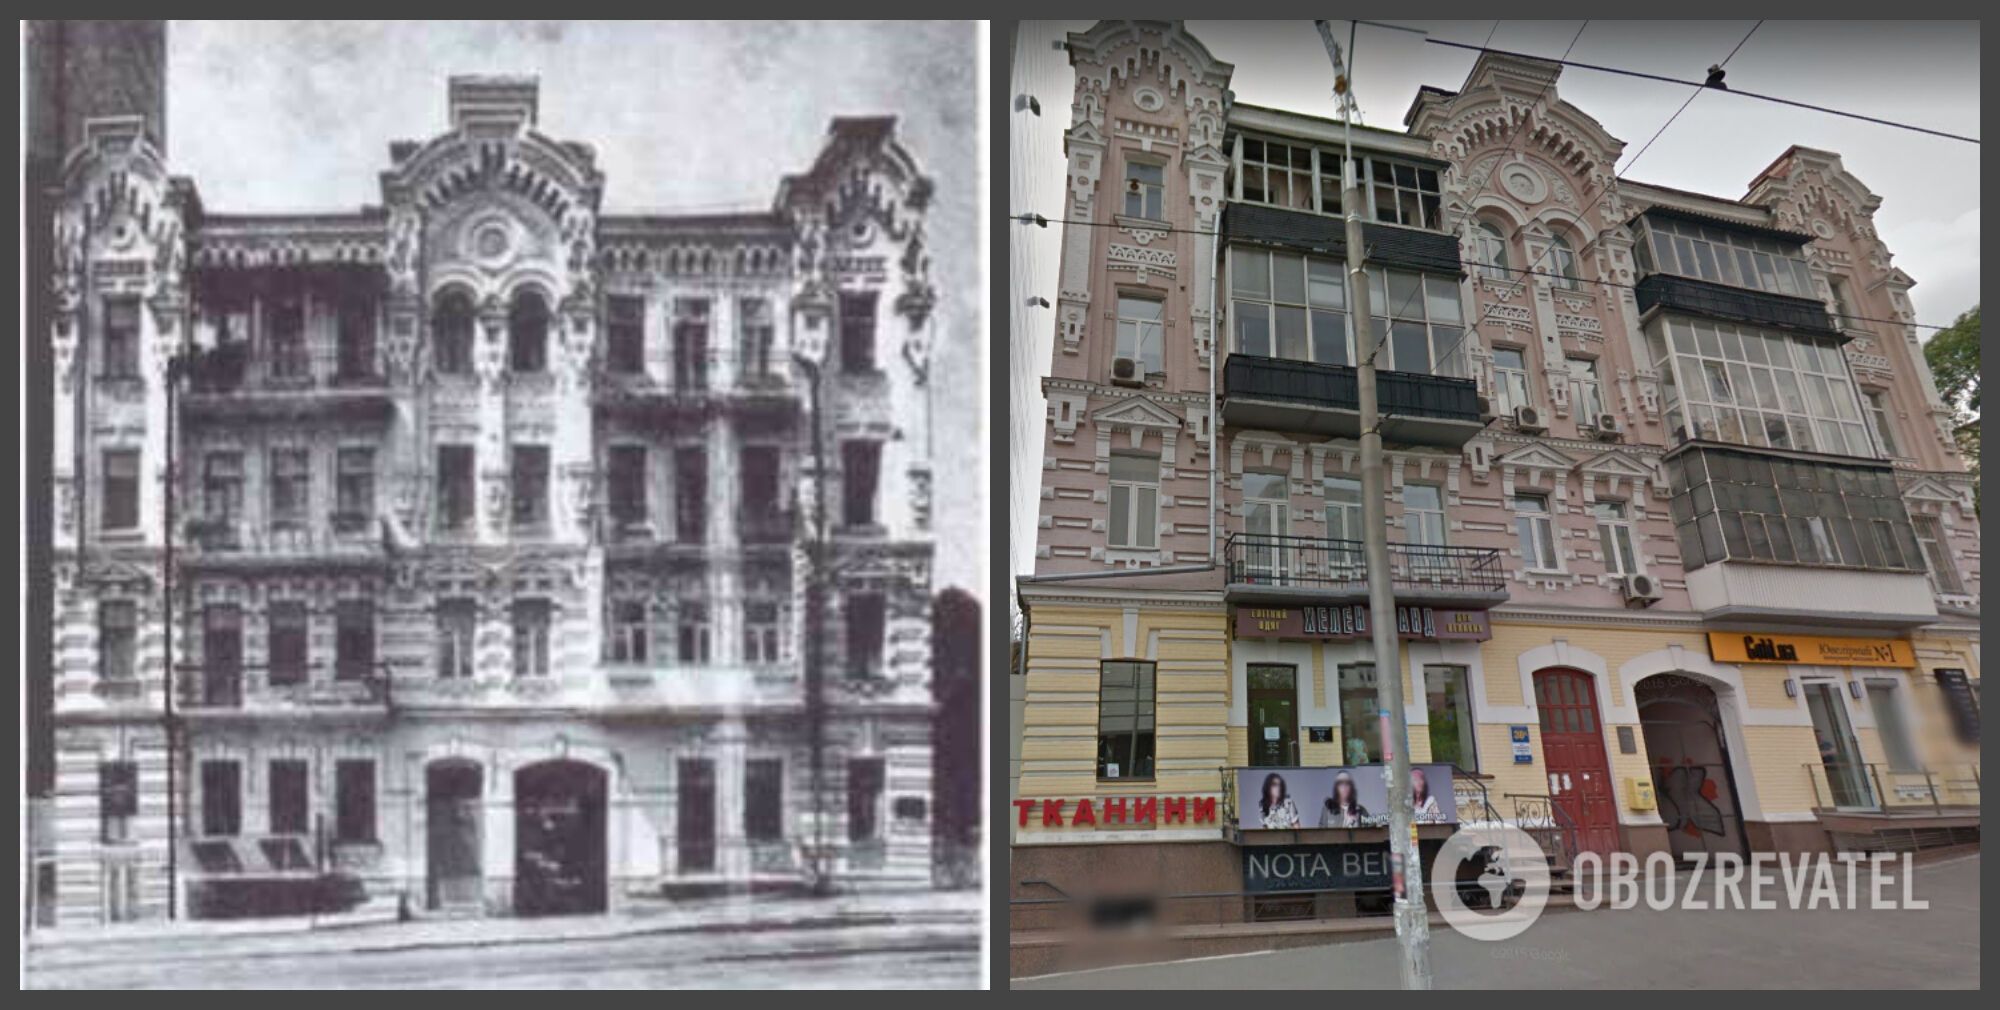 Будинок на вул. Антоновича в минулому столітті і сьогодні